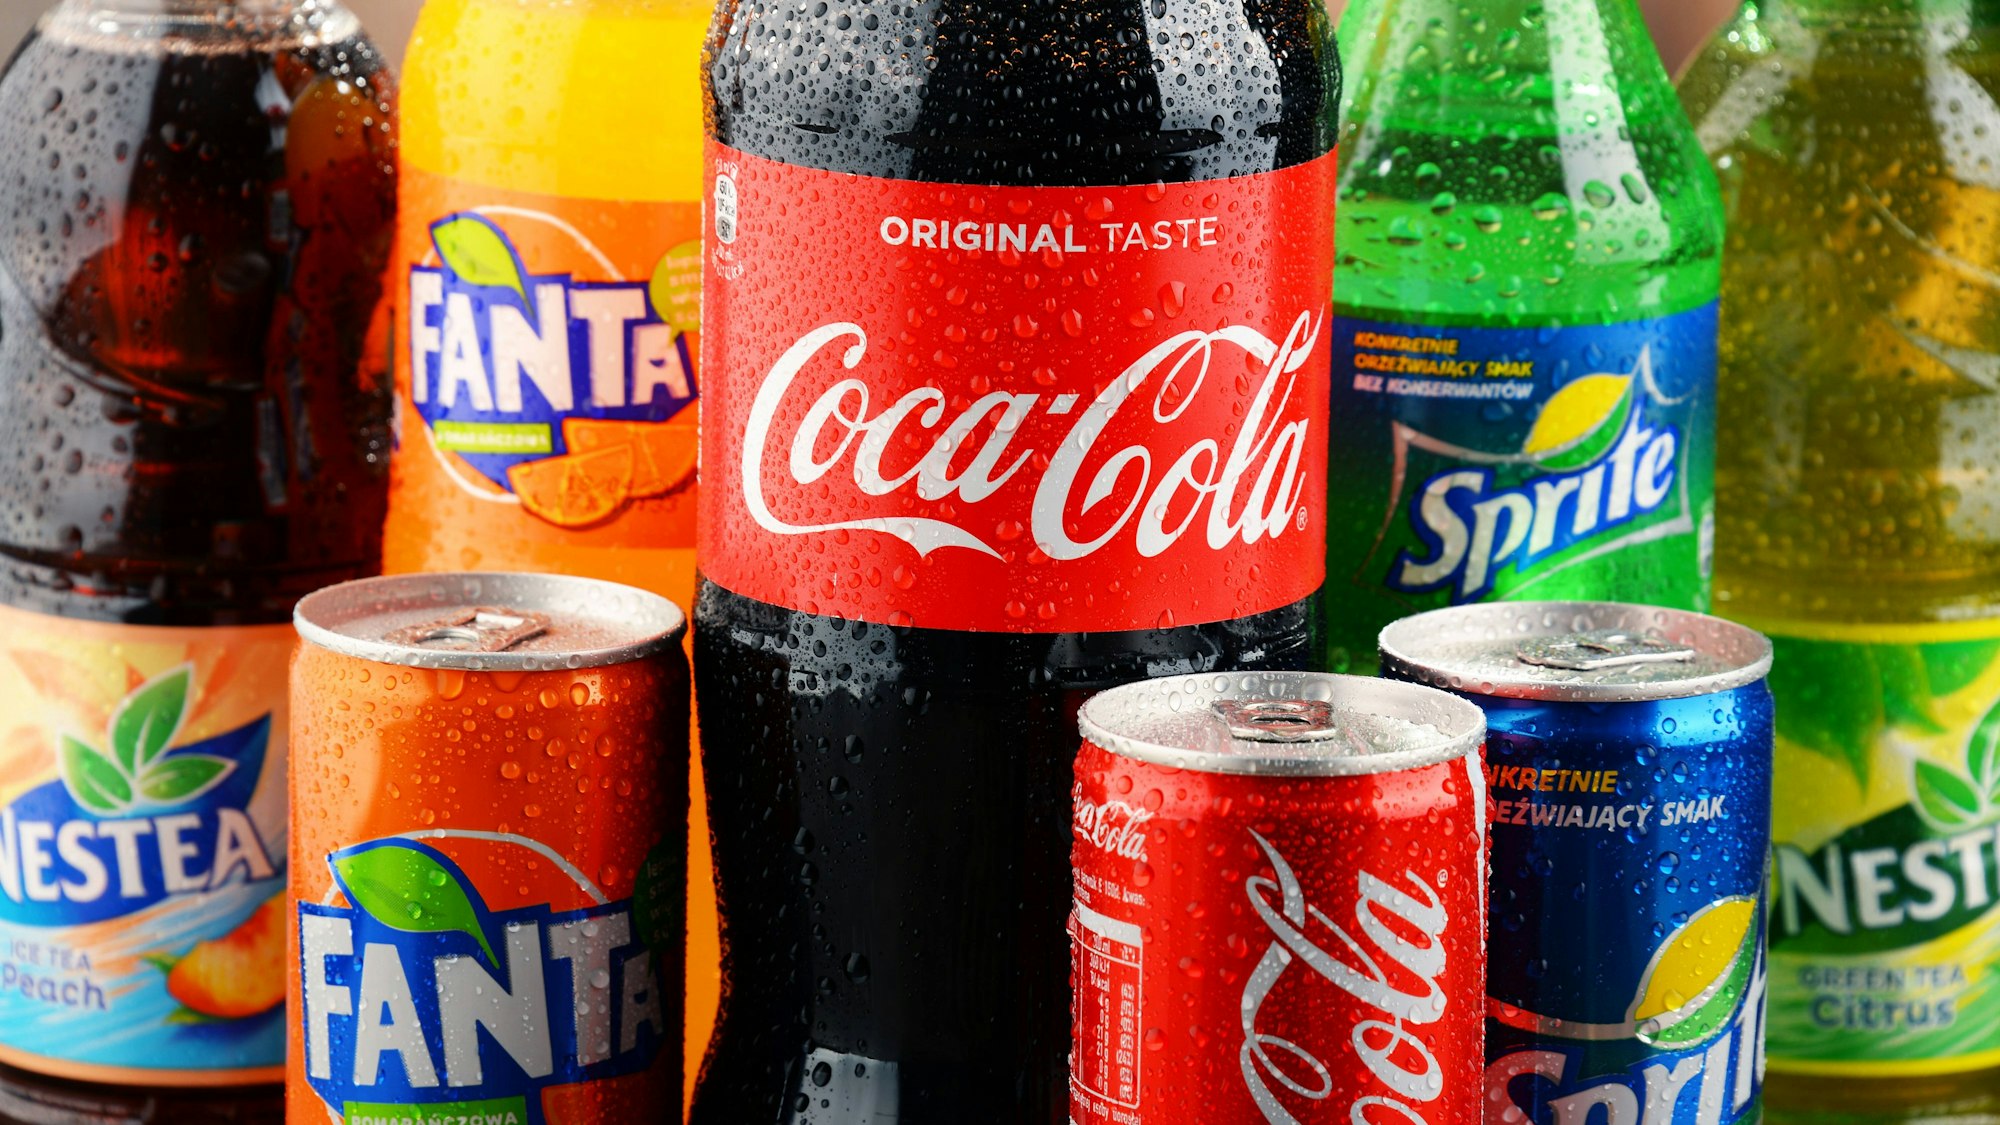 Auf einem Tisch sind diverse Getränke aufgestellt, darunter Coca-Cola, Fanta, Sprite und Nestea. (Symbolbild)